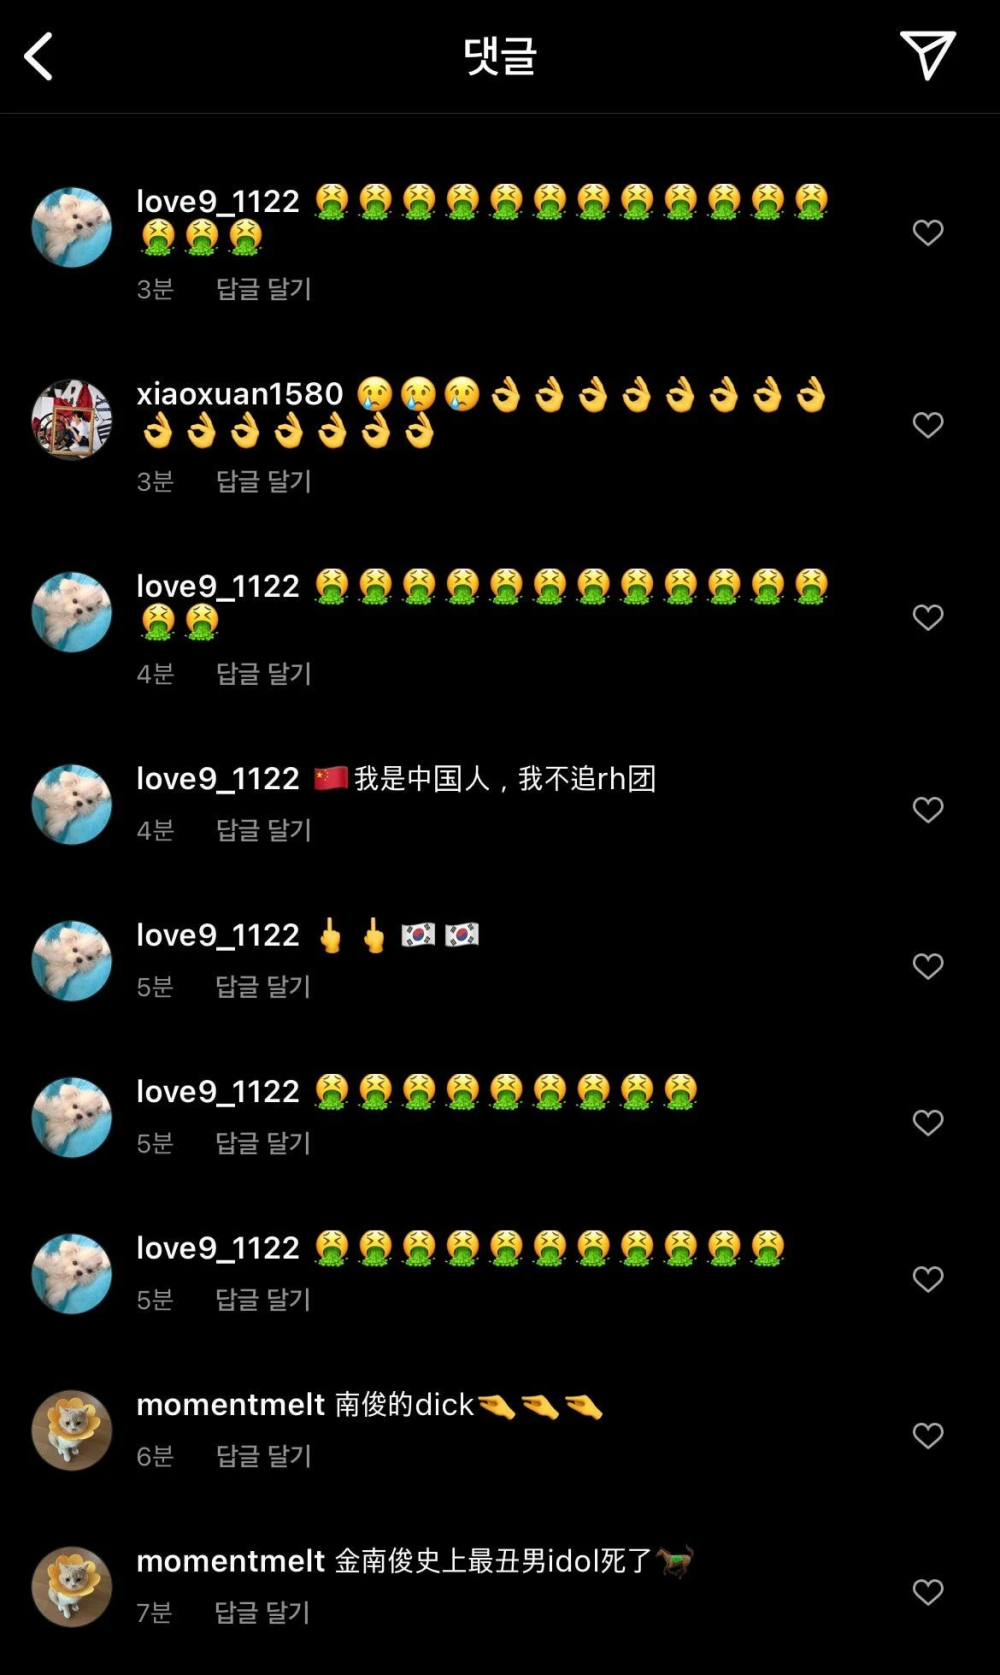 Китайские нетизены напали на инстаграм-аккаунт BTS после того, как RM поддержал корейскую команду по шорт-треку